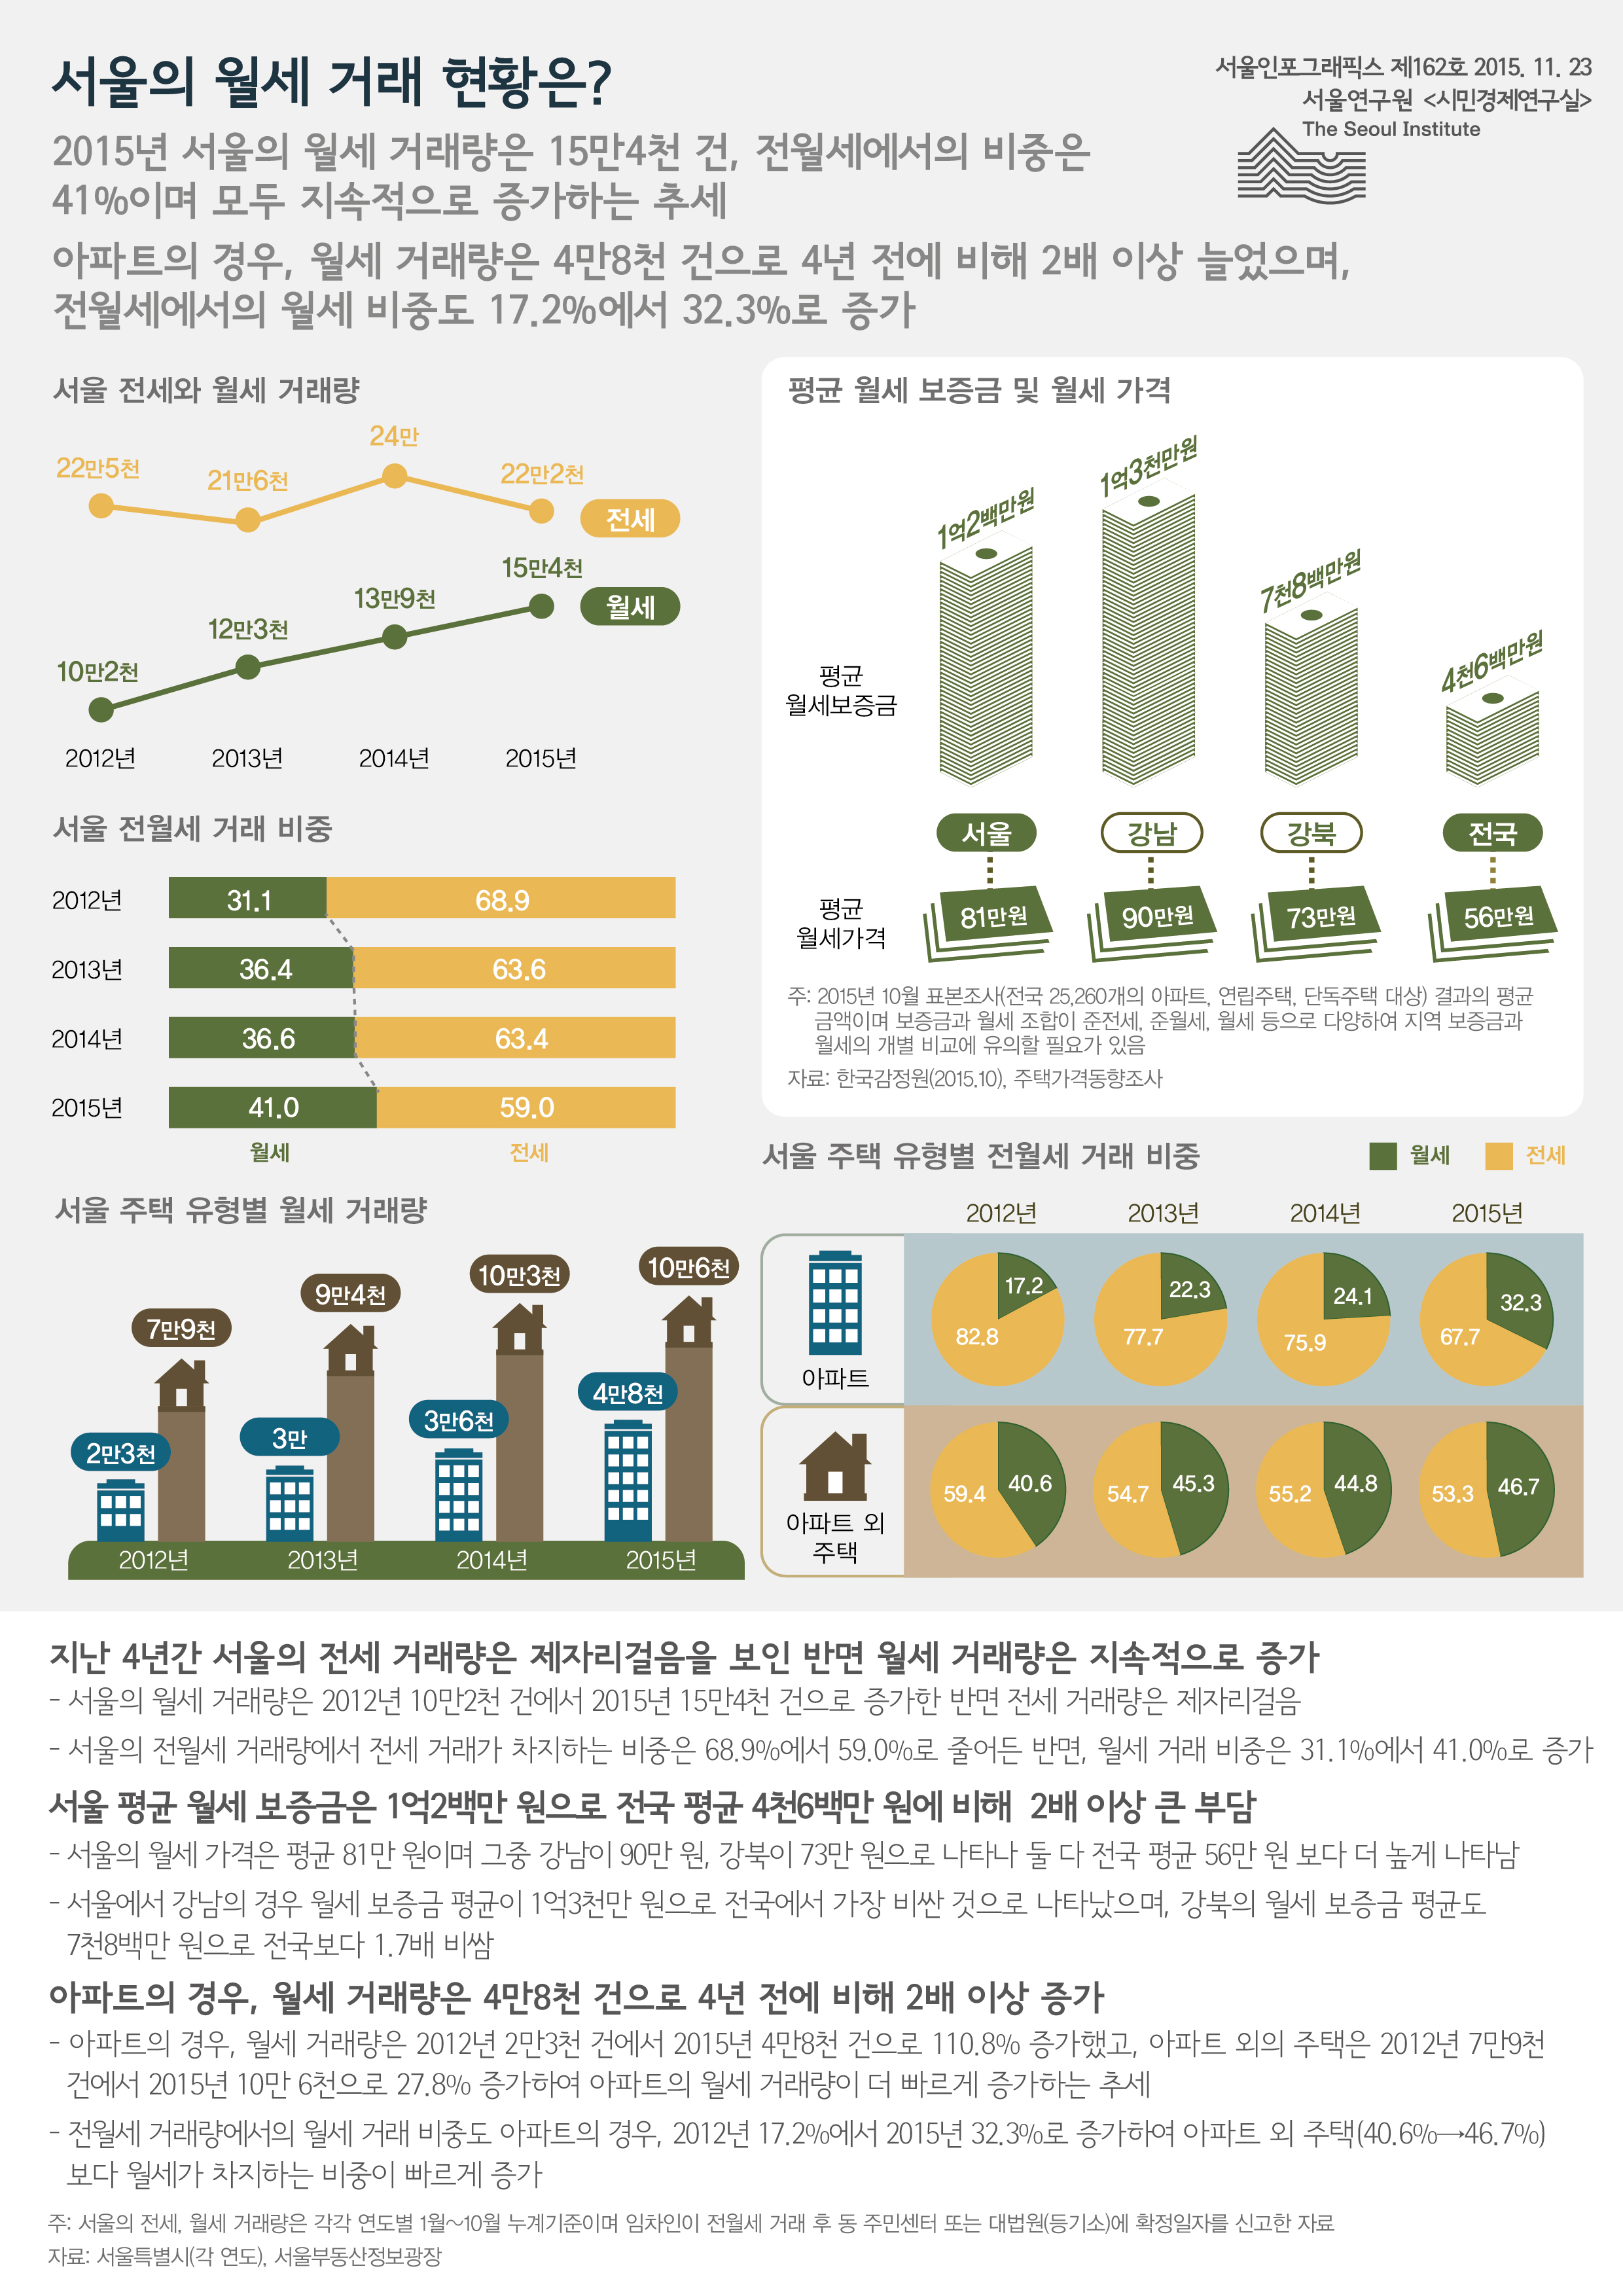 서울의 월세 거래 현황은? 서울인포그래픽스 제 162호 2015년 11월 23일 2015년 서울의 월세 거래량은 15만4천 건, 전월세에서의 비중은 41%이며 모두 지속적으로 증가하는 추세. 아파트의 경우, 월세 거래량은 4만8천 건으로 4년 전에 비해 2배 이상 늘었으며, 전월세에서의 월세 비중도 17.2%에서 32.3%로 증가함으로 정리될 수 있습니다. 인포그래픽으로 제공되는 그래픽은 하단에 표로 자세히 제공됩니다.